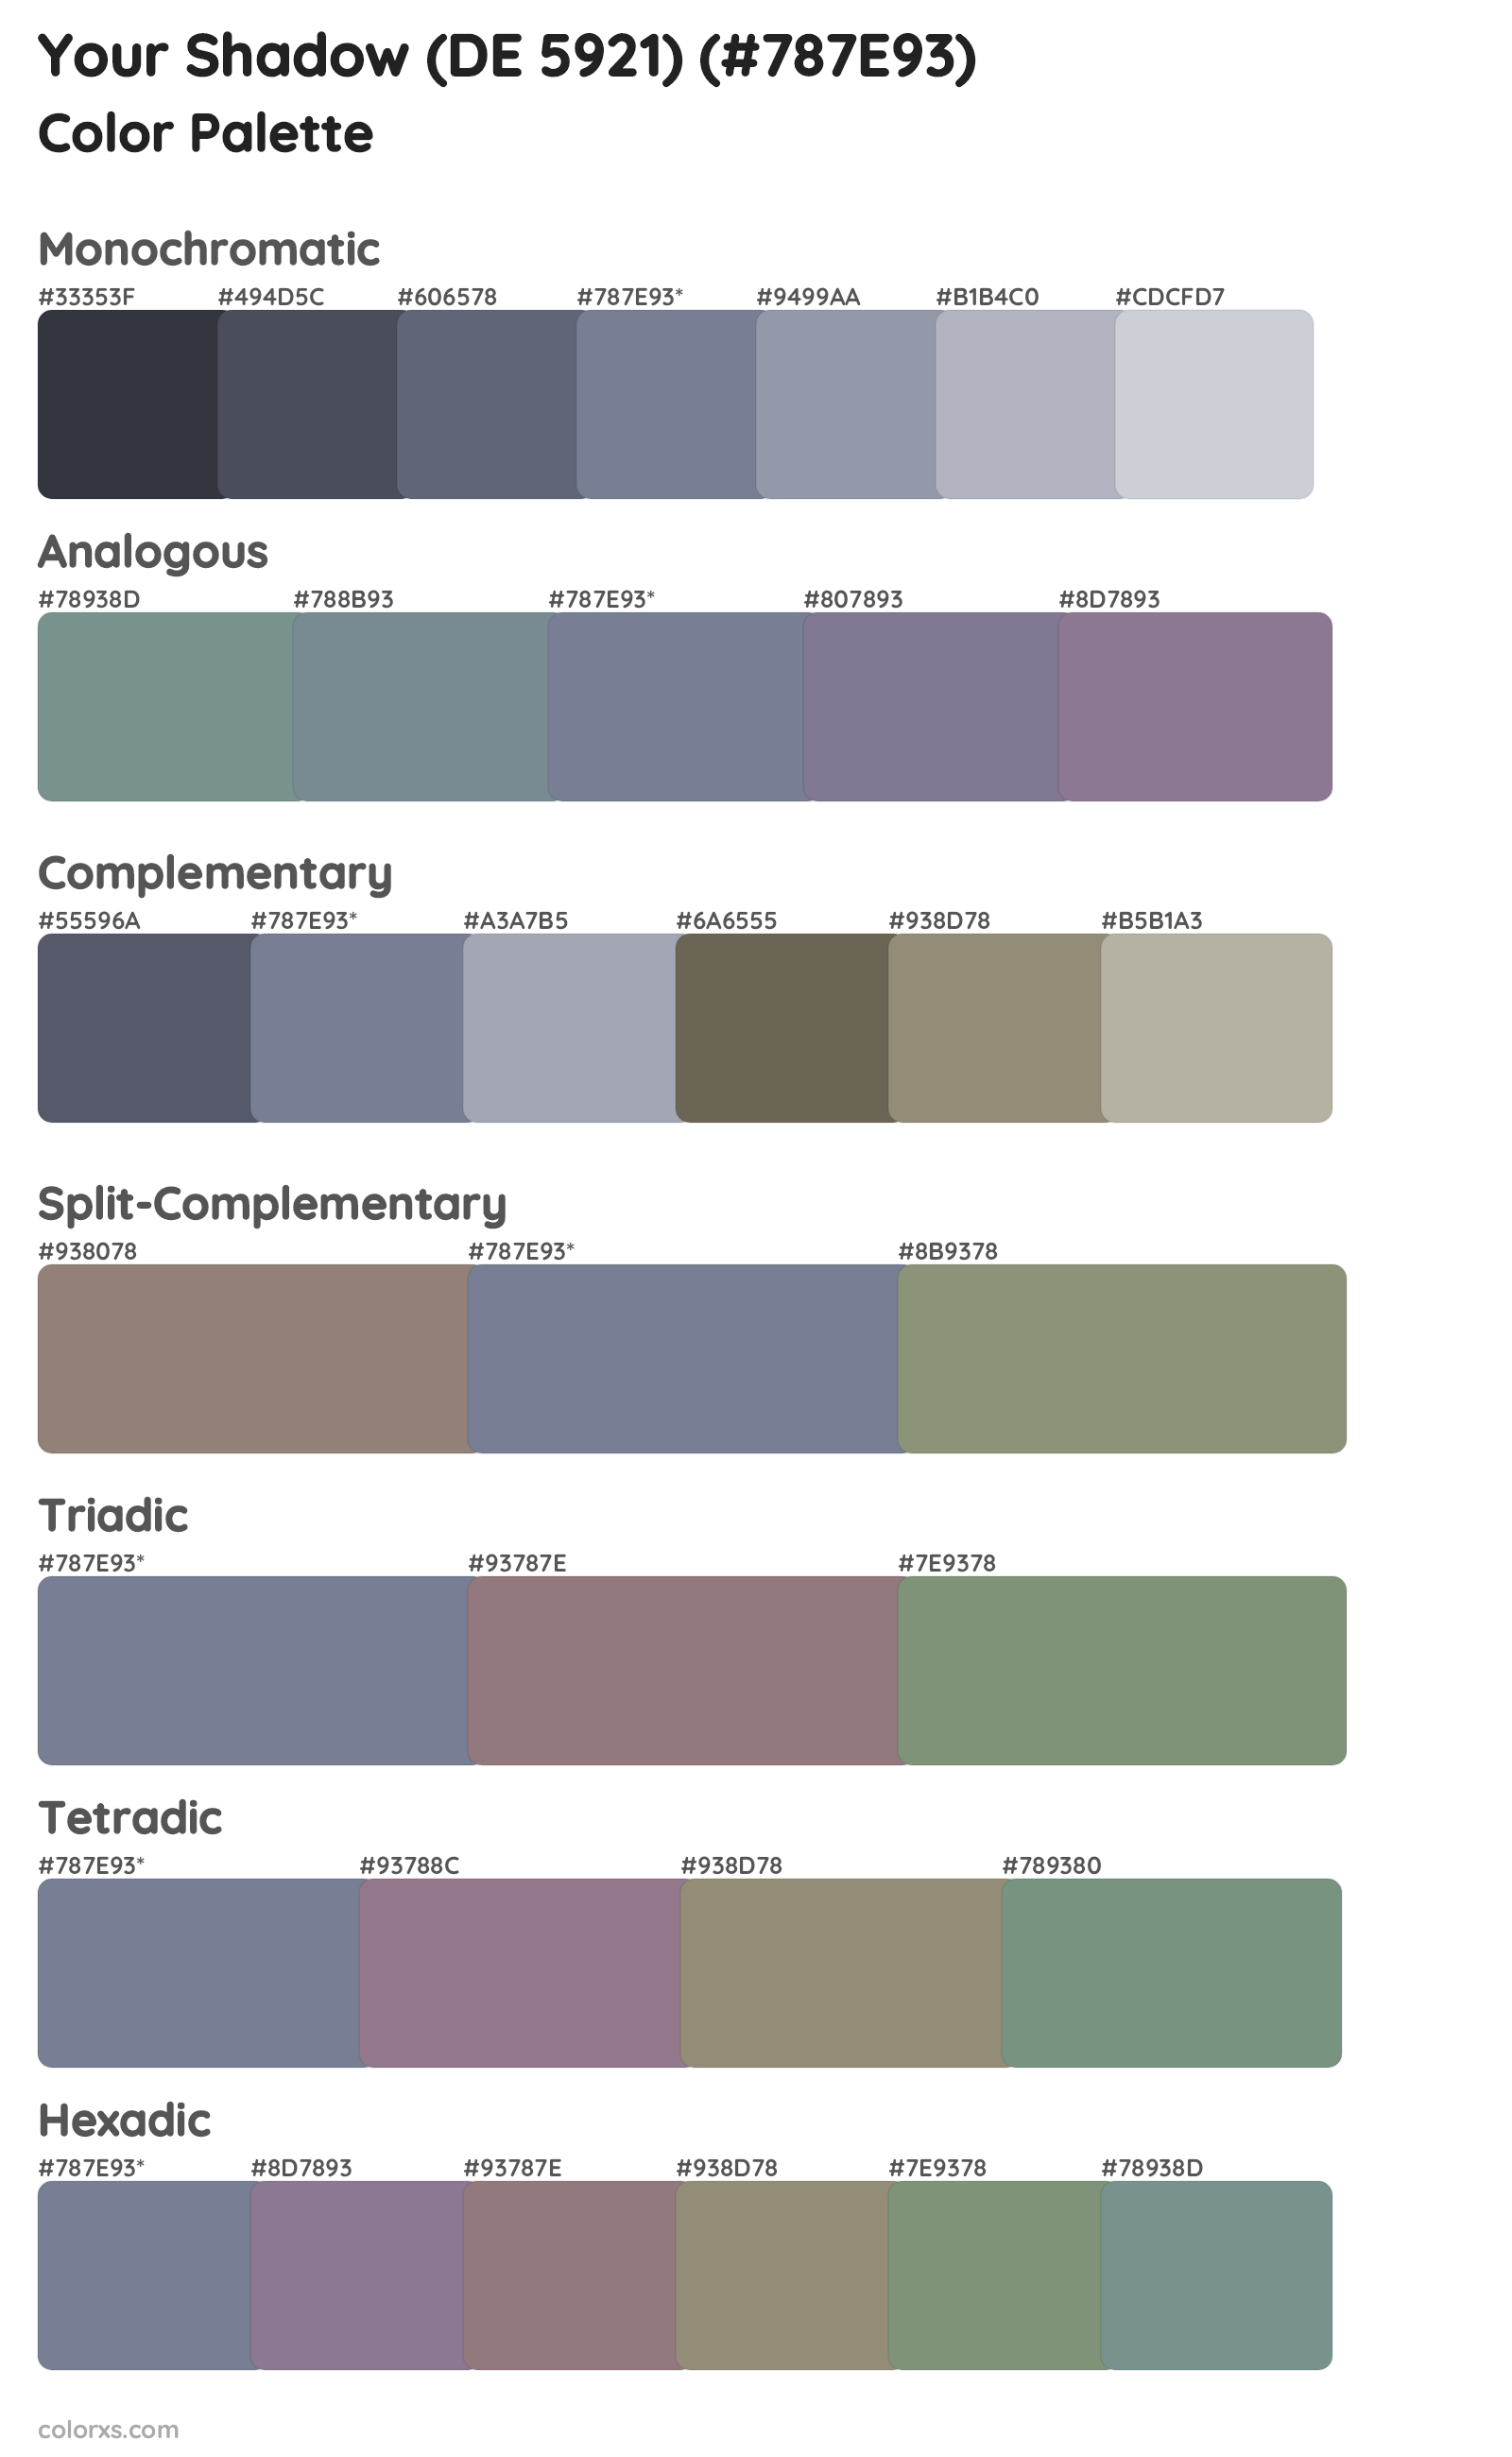 Your Shadow (DE 5921) Color Scheme Palettes